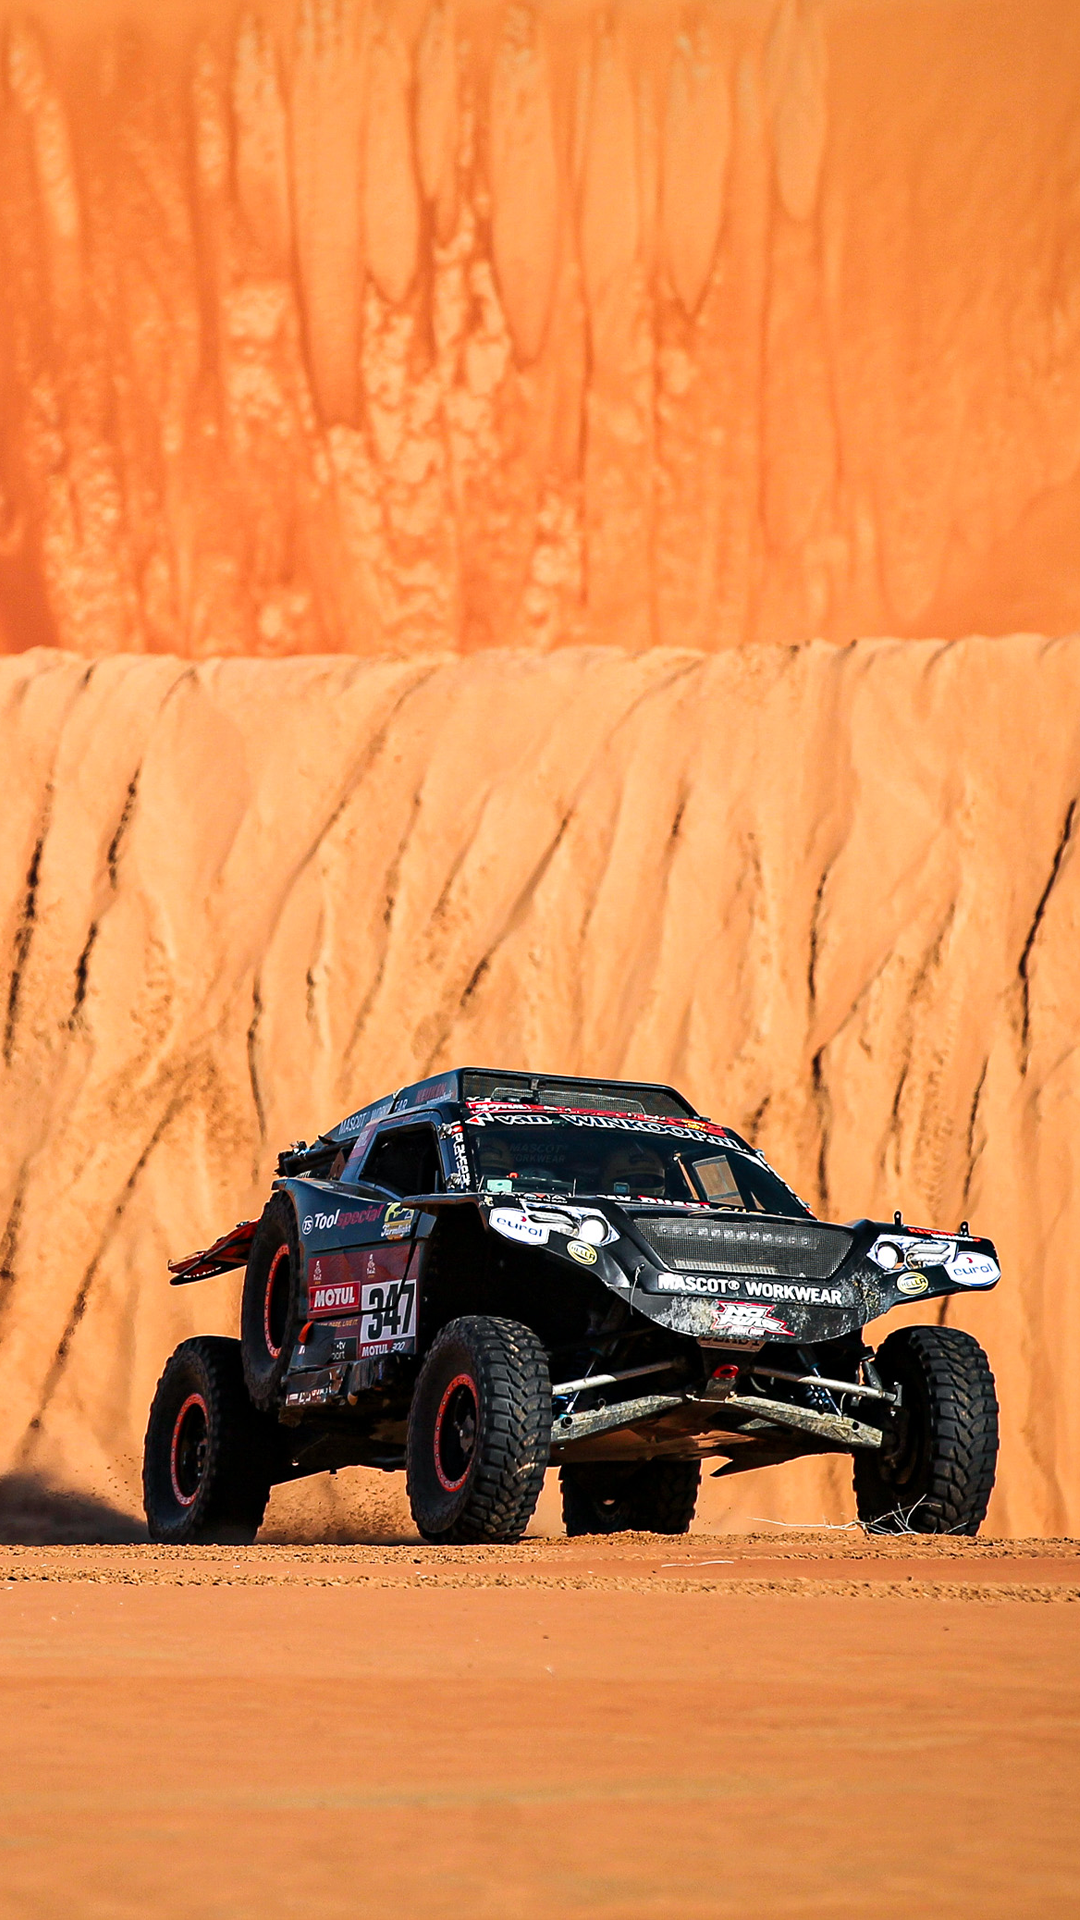 Dakar Rally Cars Dakar Rally Car Rally